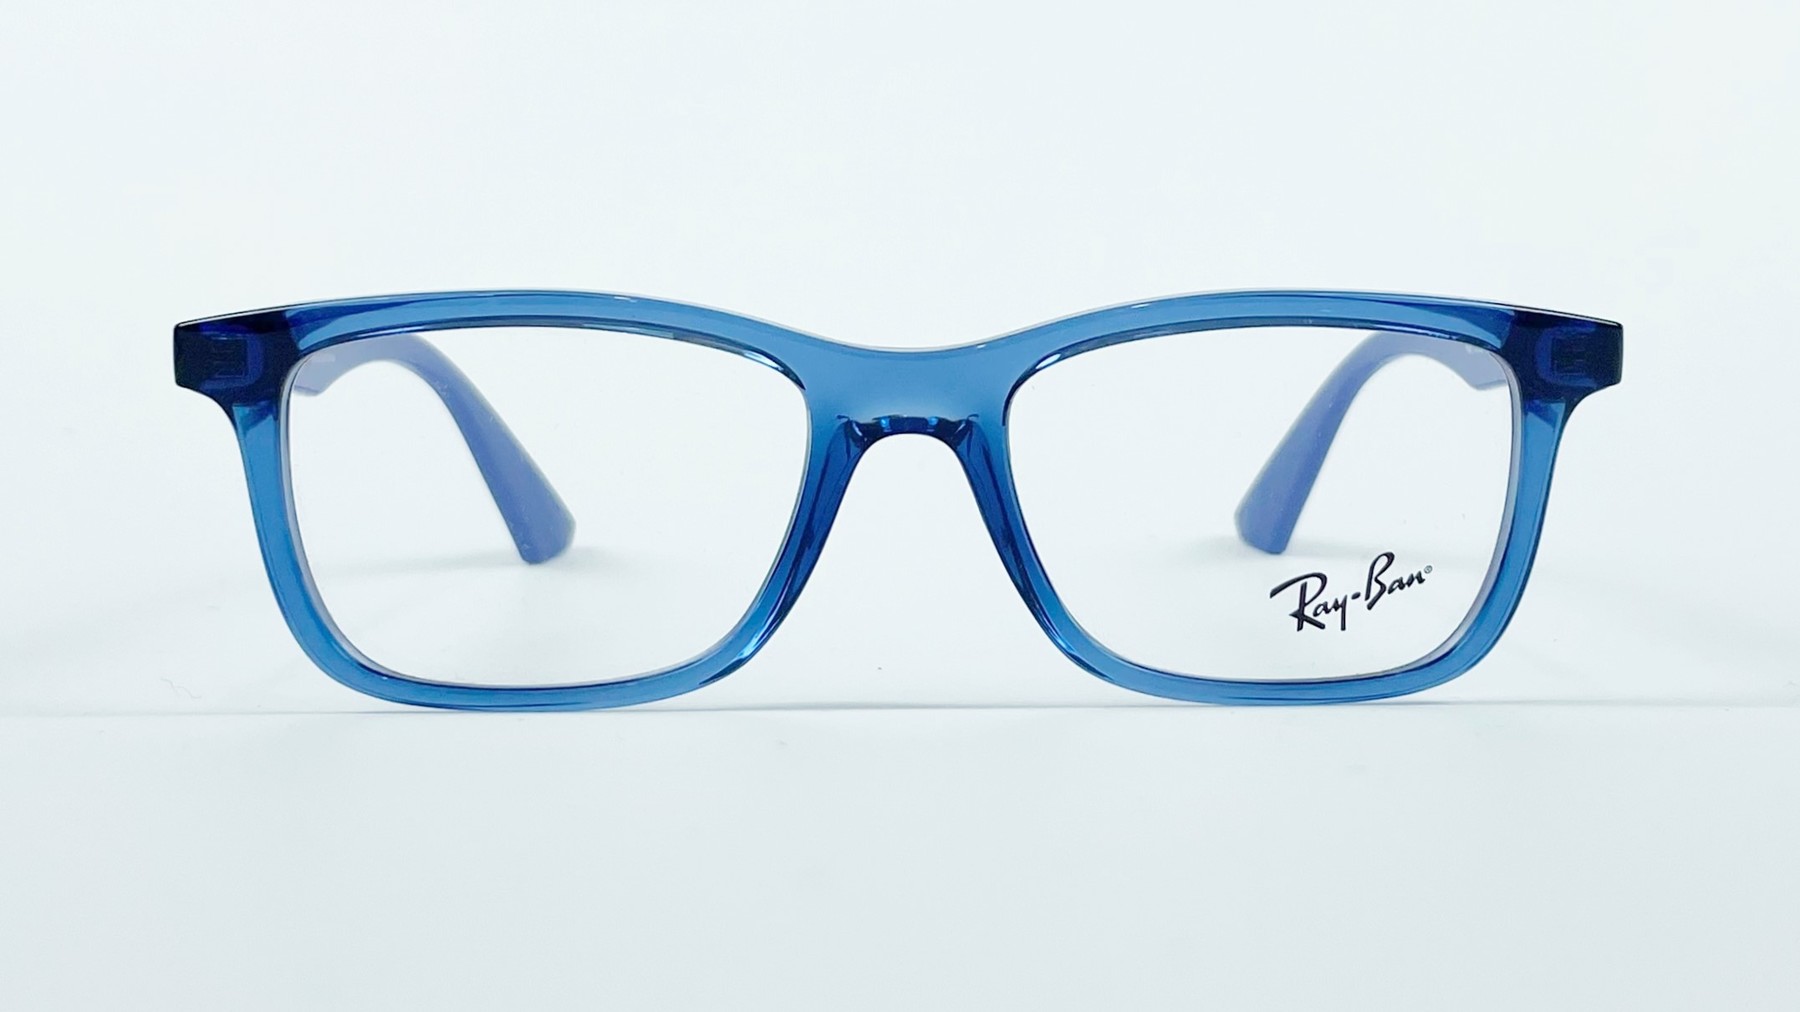 RayBan RB1562 3686, Korean glasses, sunglasses, eyeglasses, glasses